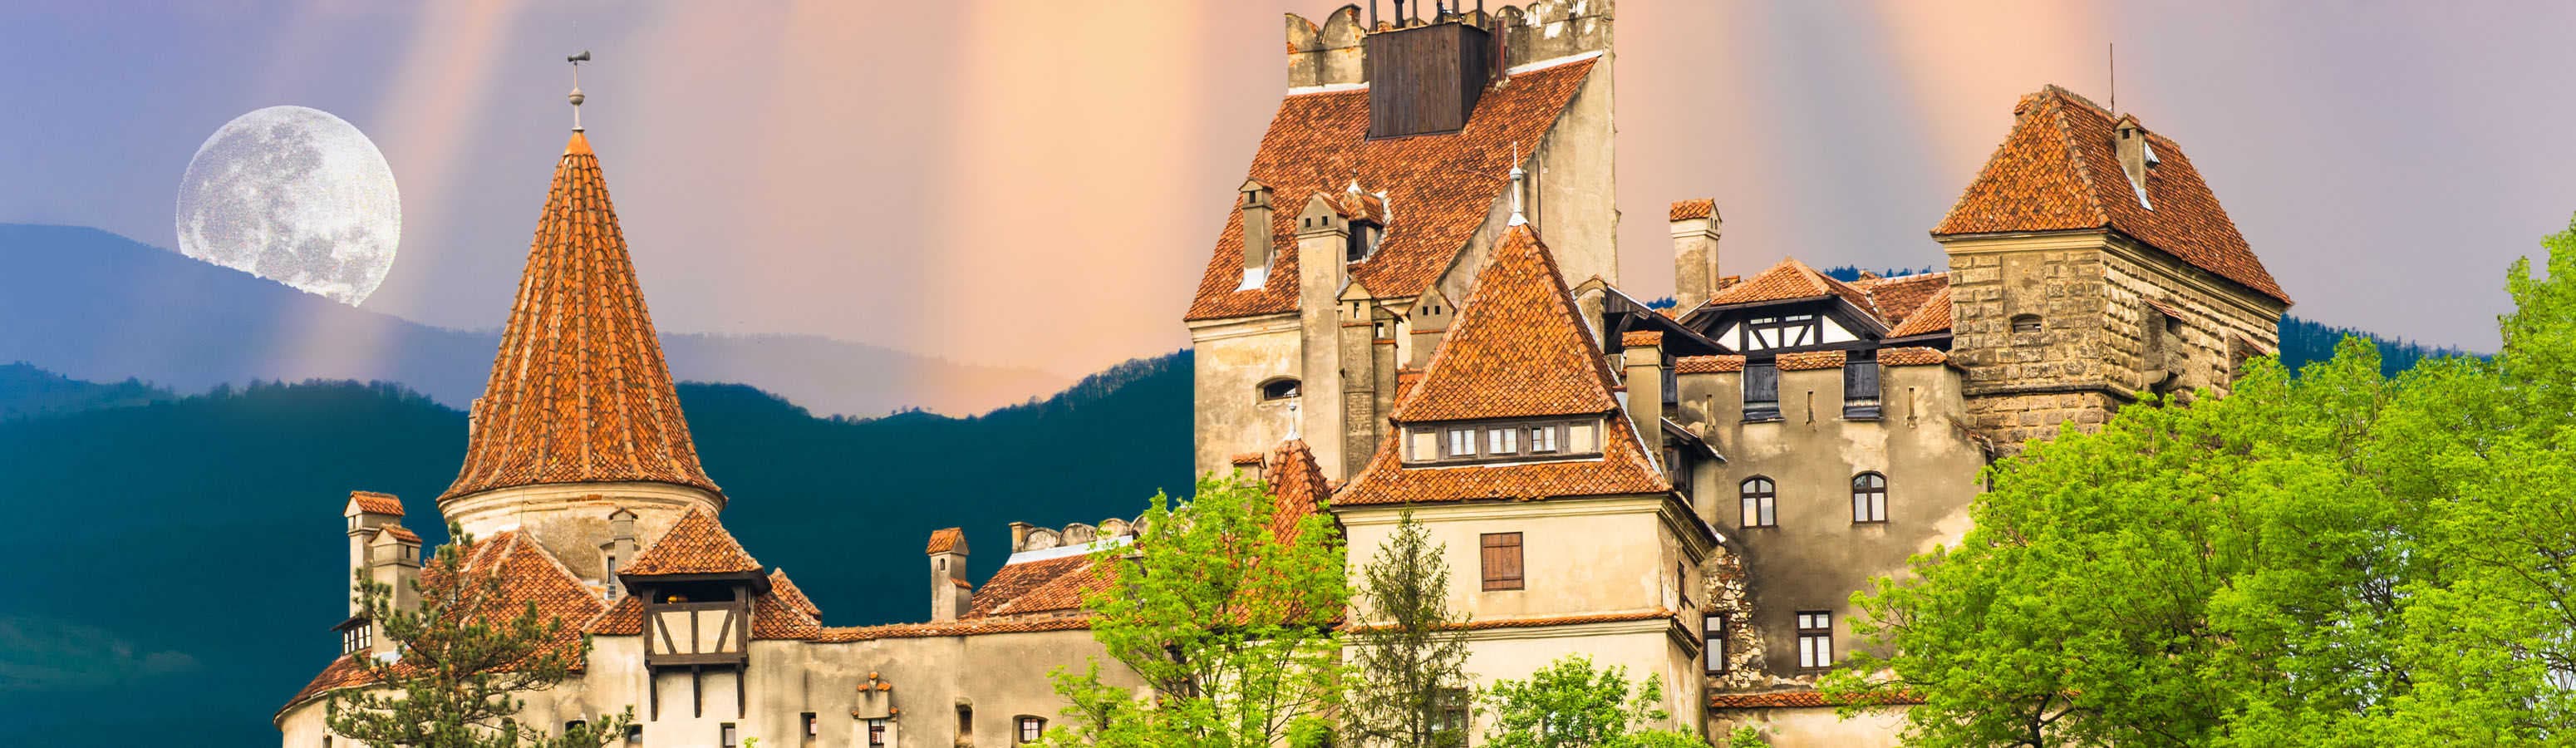 Castello che decora la regione di Dracula